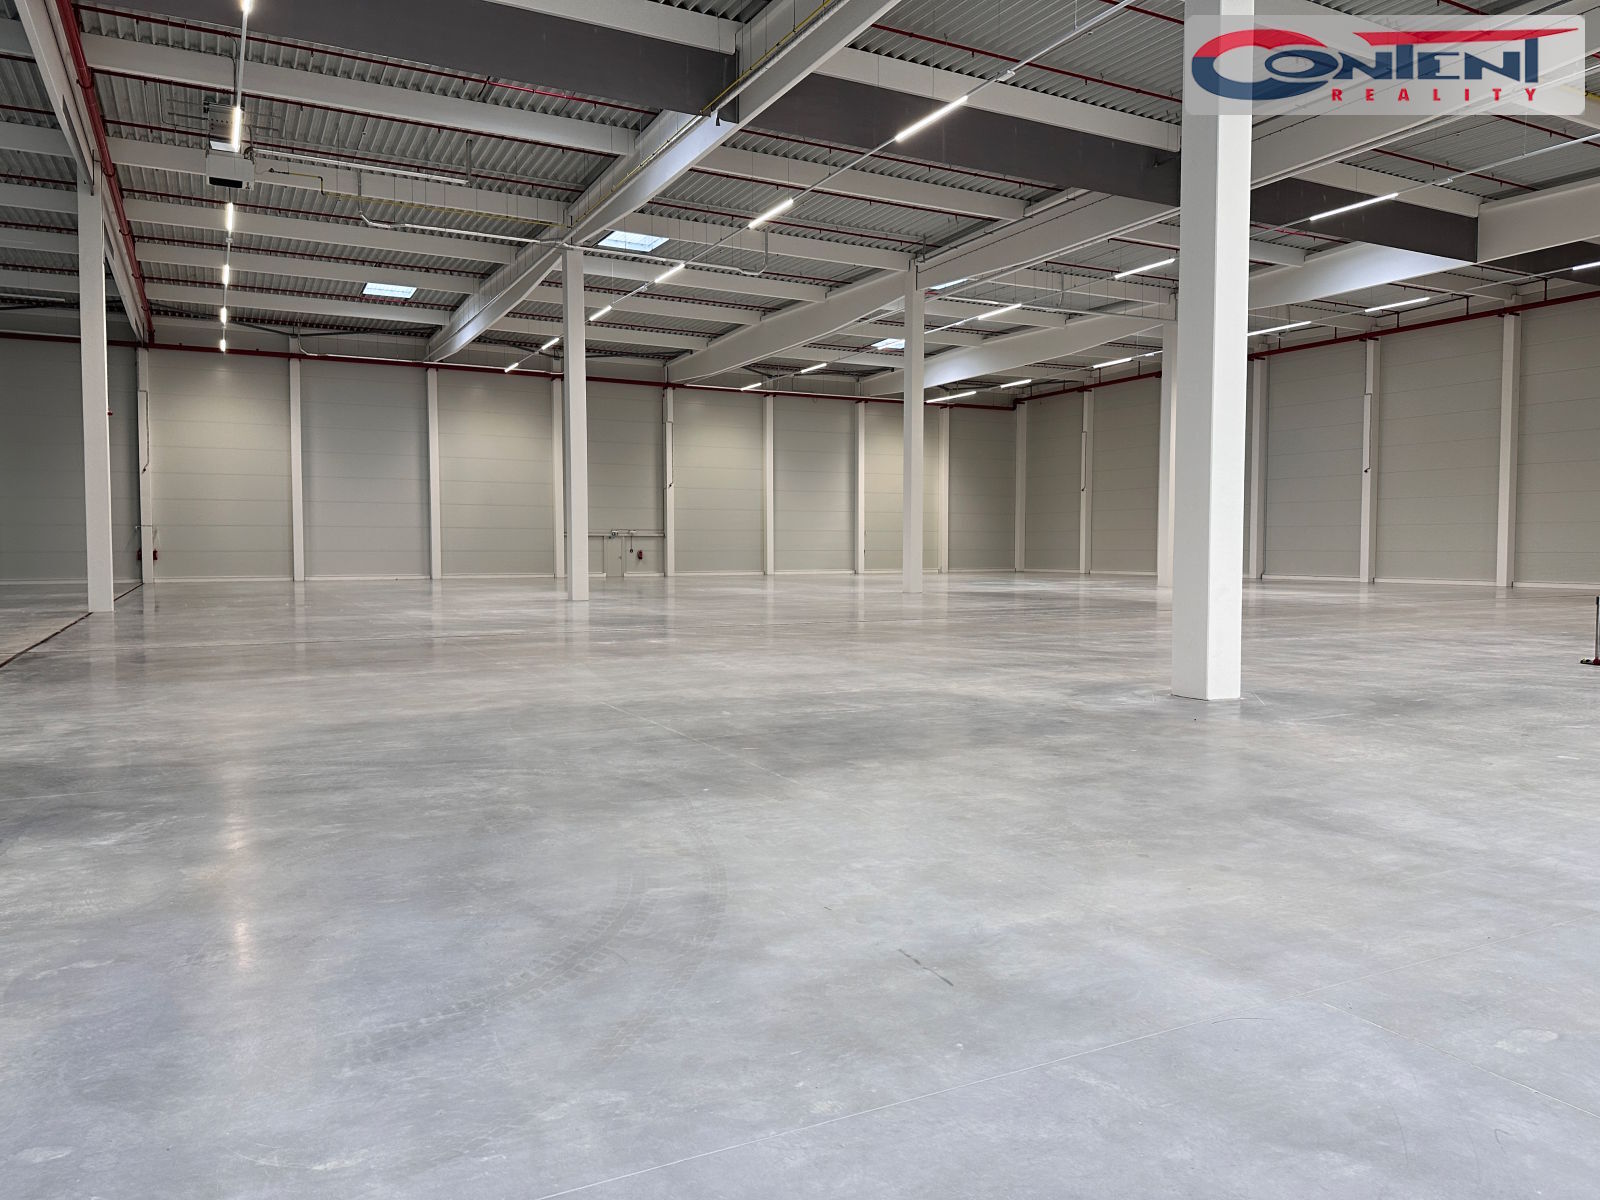 Pronájem skladu nebo výrobních prostor 4.398 m², Plzeň - Myslinka, D5